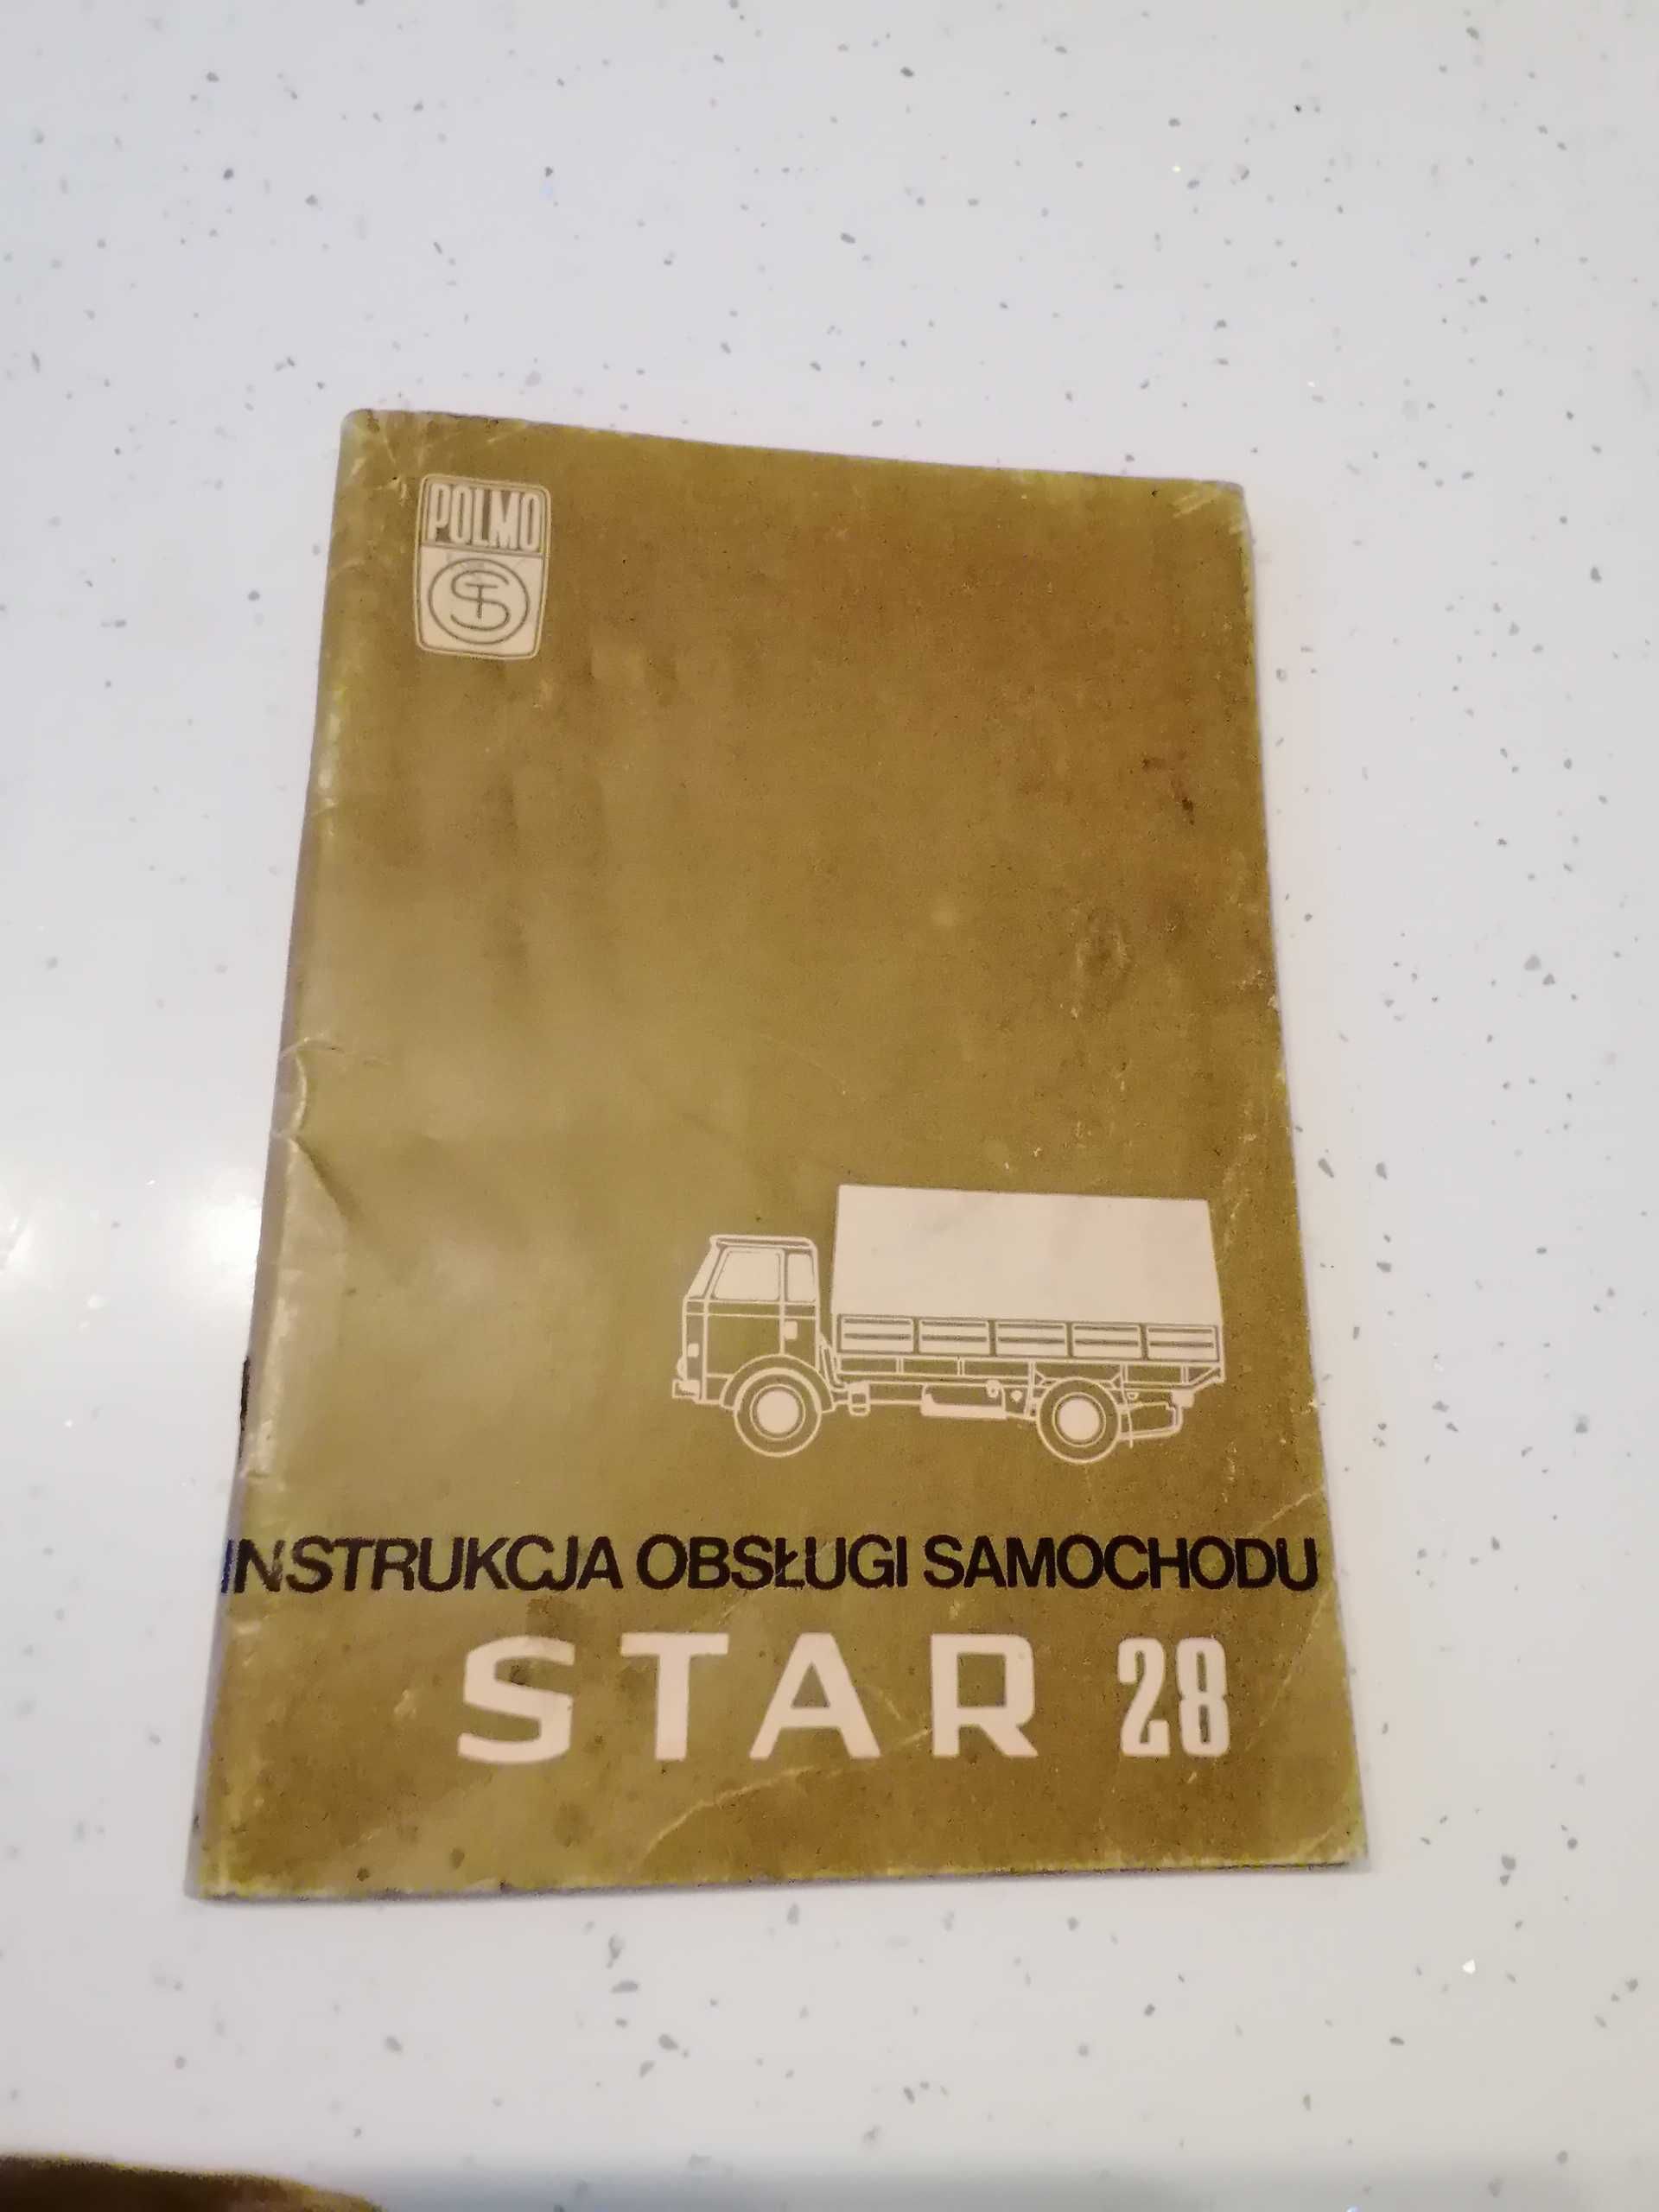 STAR 28 - instrukcja obsługi samochodu oryginał z 1976 roku